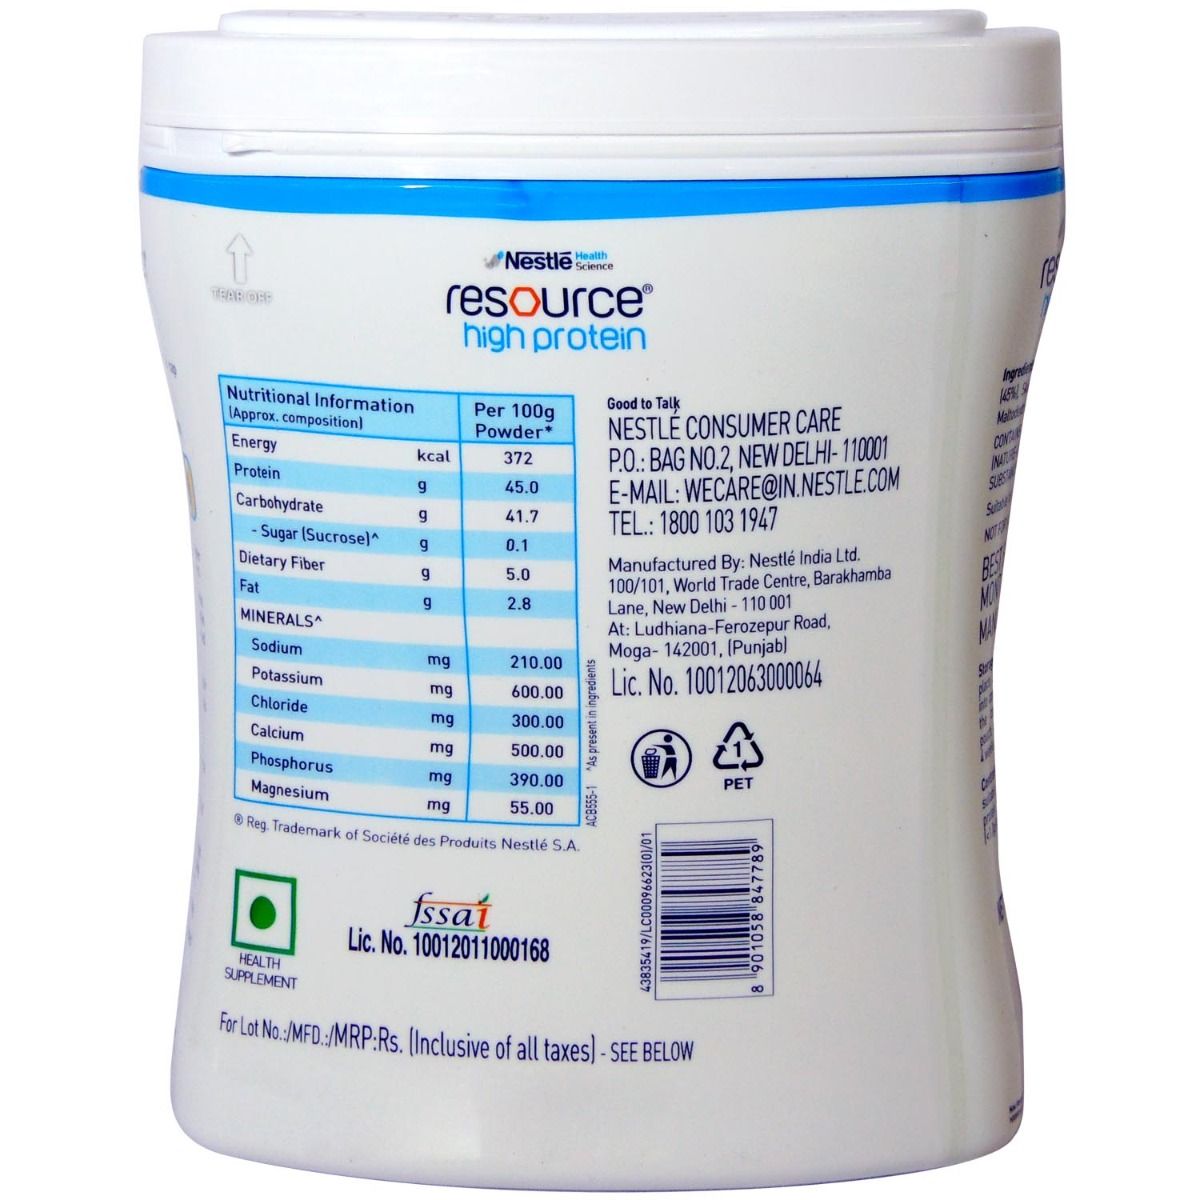 Nestle Resource High Protein Vanilla Flavour Powder, 400 gm, Pack of 1 